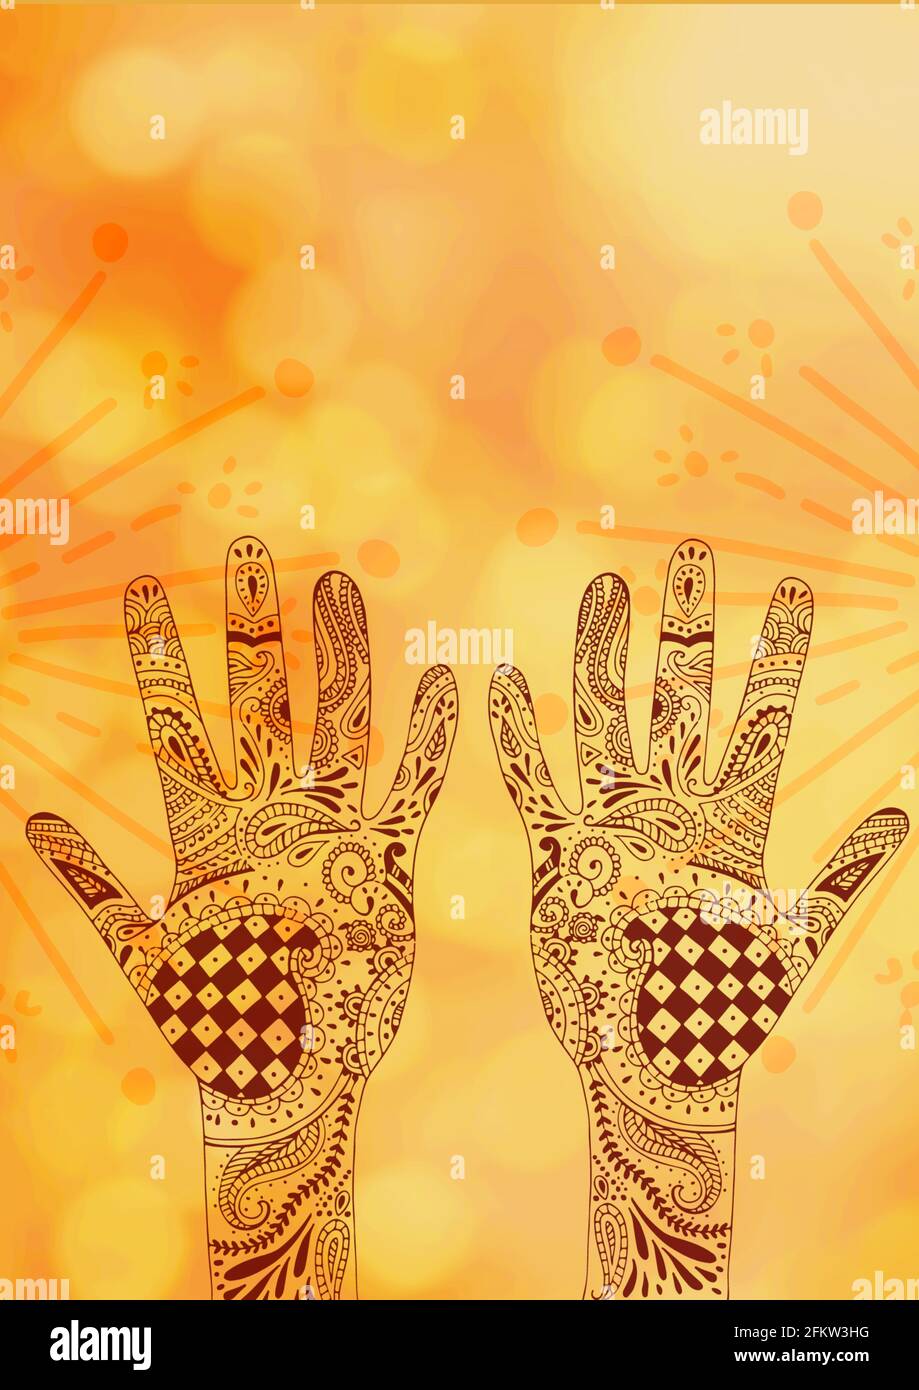 Composizione di mani tatuate con hennè e linea e punto gialli dettagli su sfondo giallo nuvoloso Foto Stock